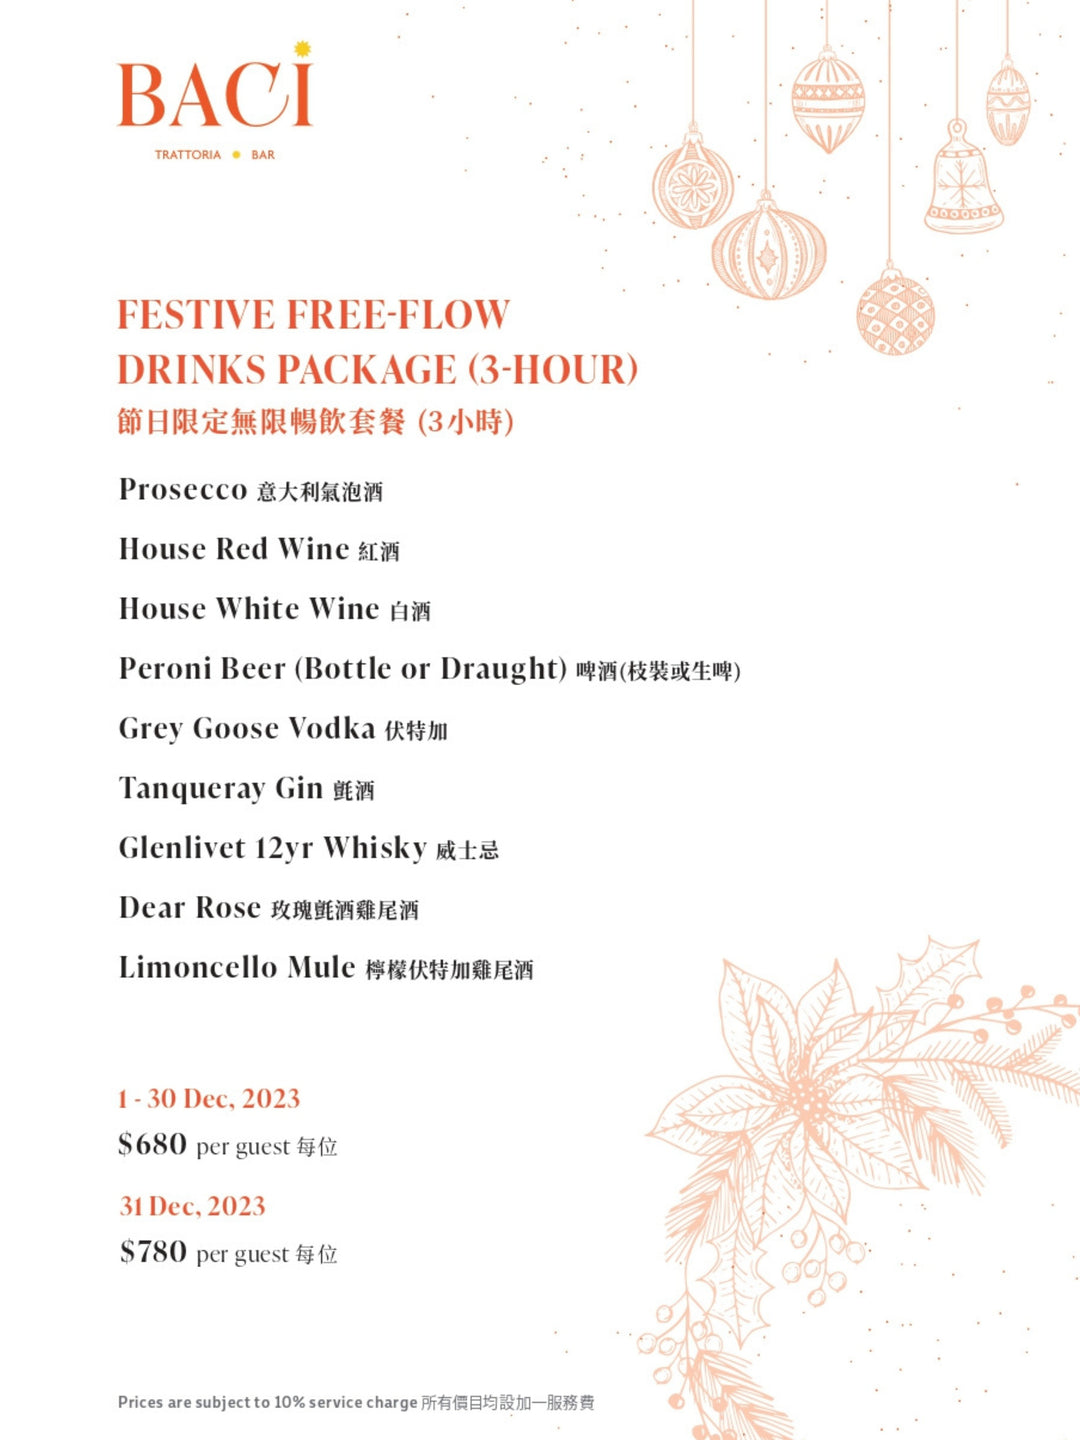 BACI FESTIVE FREE-FLOW DRINKS PACKAGE